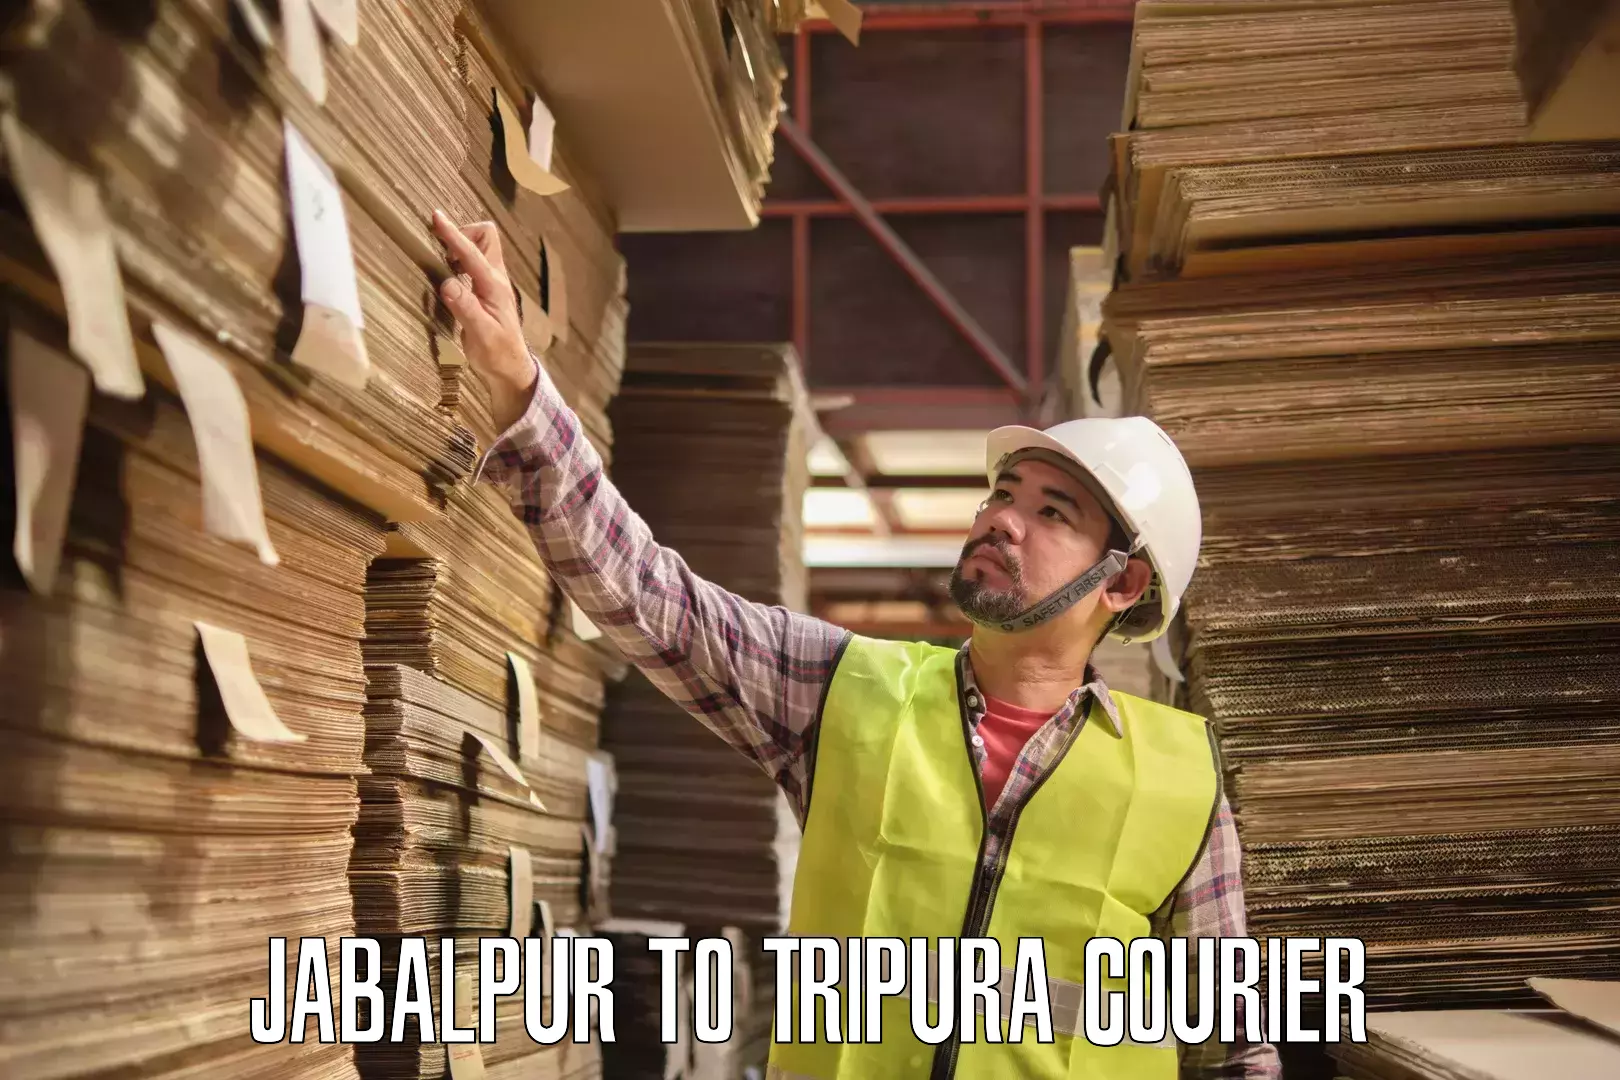 Subscription-based courier Jabalpur to Kailashahar